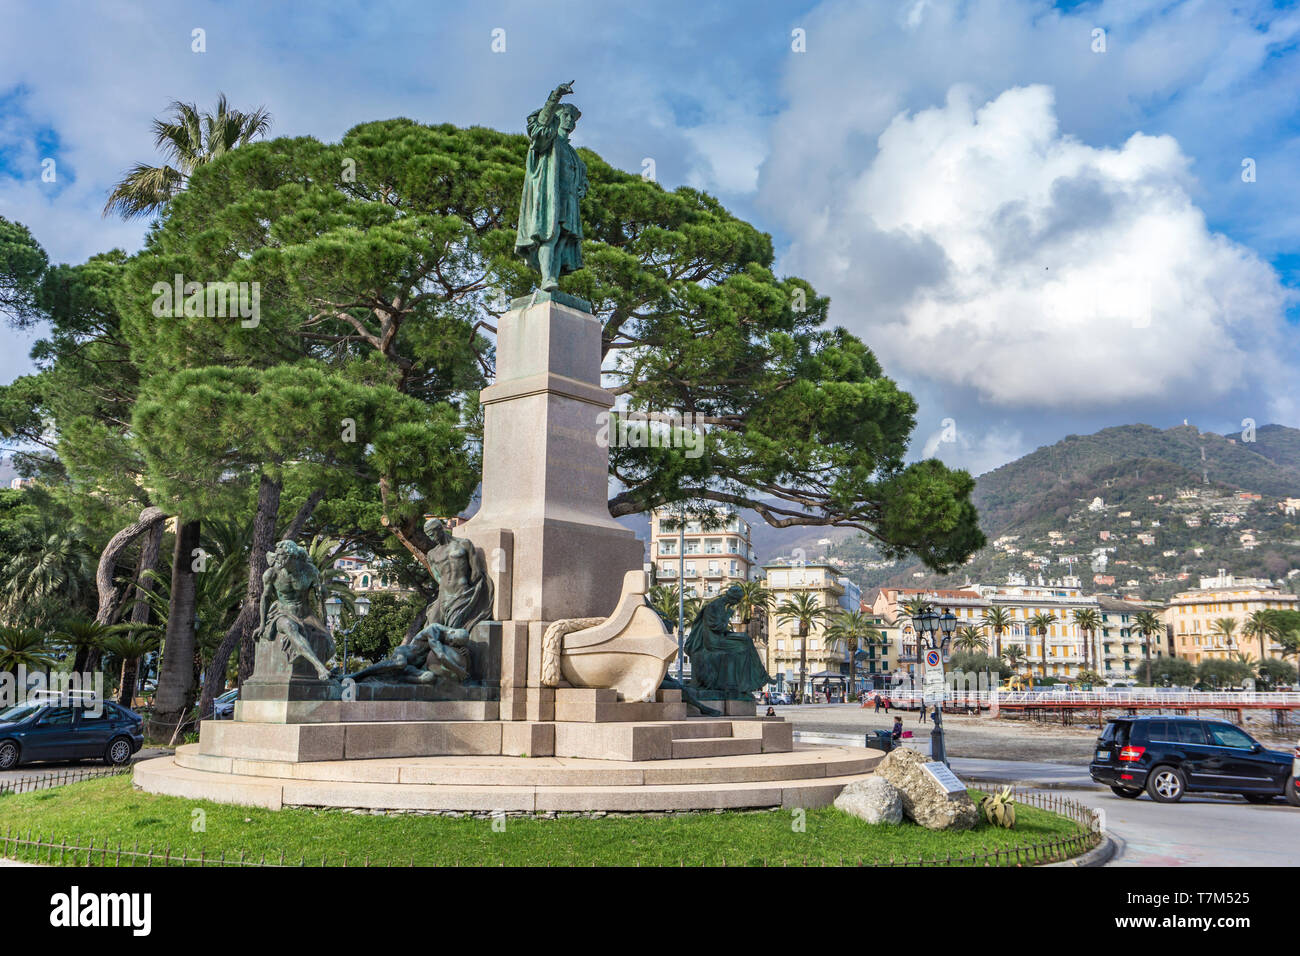 RAPALLO, Italia - 12 Marzo 2018: vista al monumento a Cristoforo Colombo a Rapallo, Italia. Il monumento è stato realizzato dallo scultore Arturo Dresco a 1914 Foto Stock